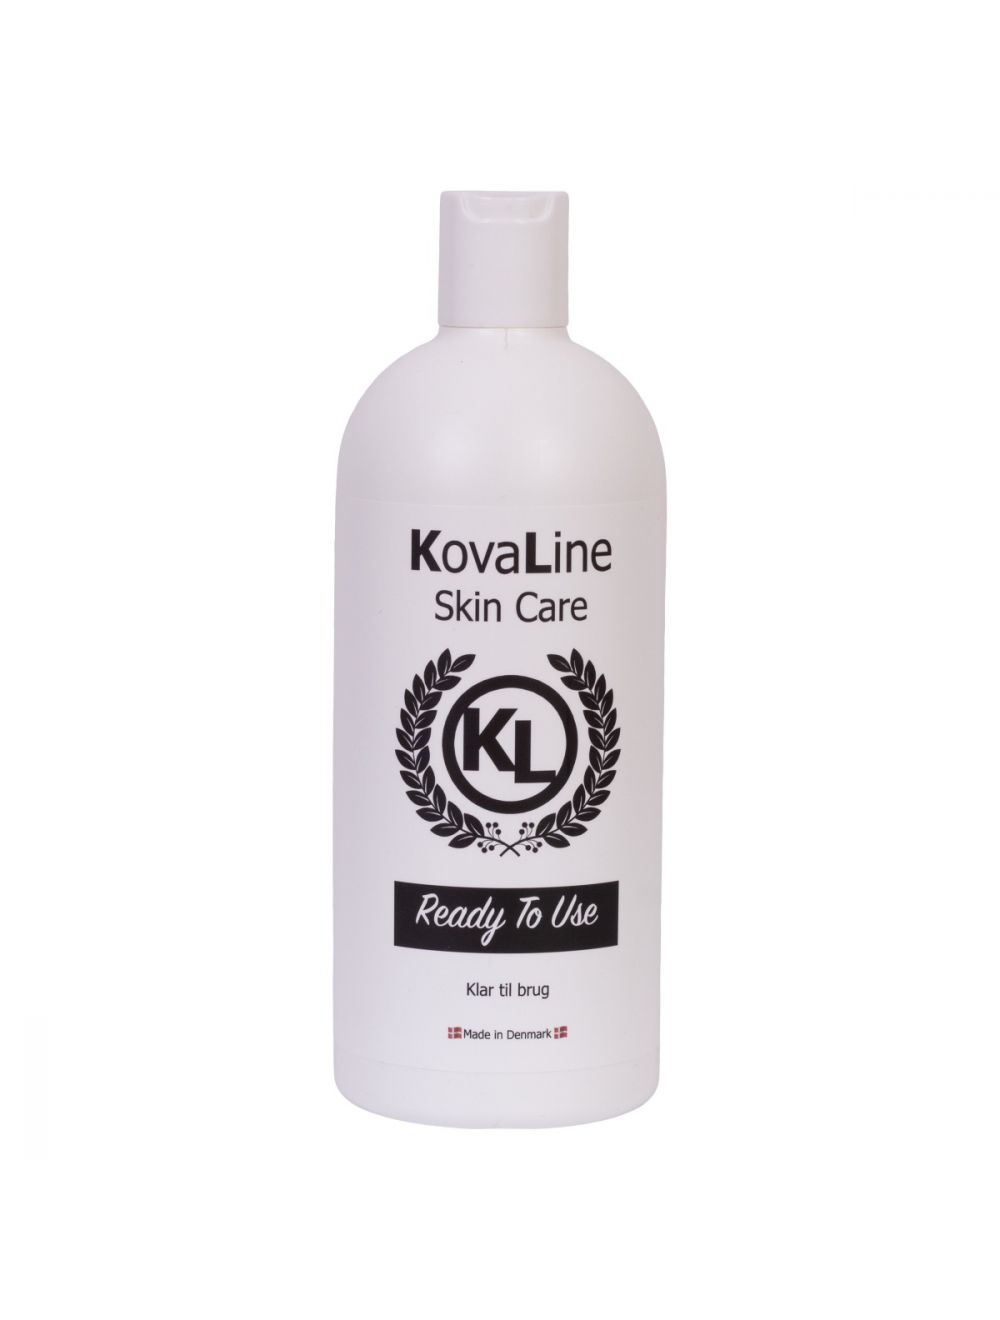 KovaLine - Ready to use - 500ml - (571326900001), Kovaline